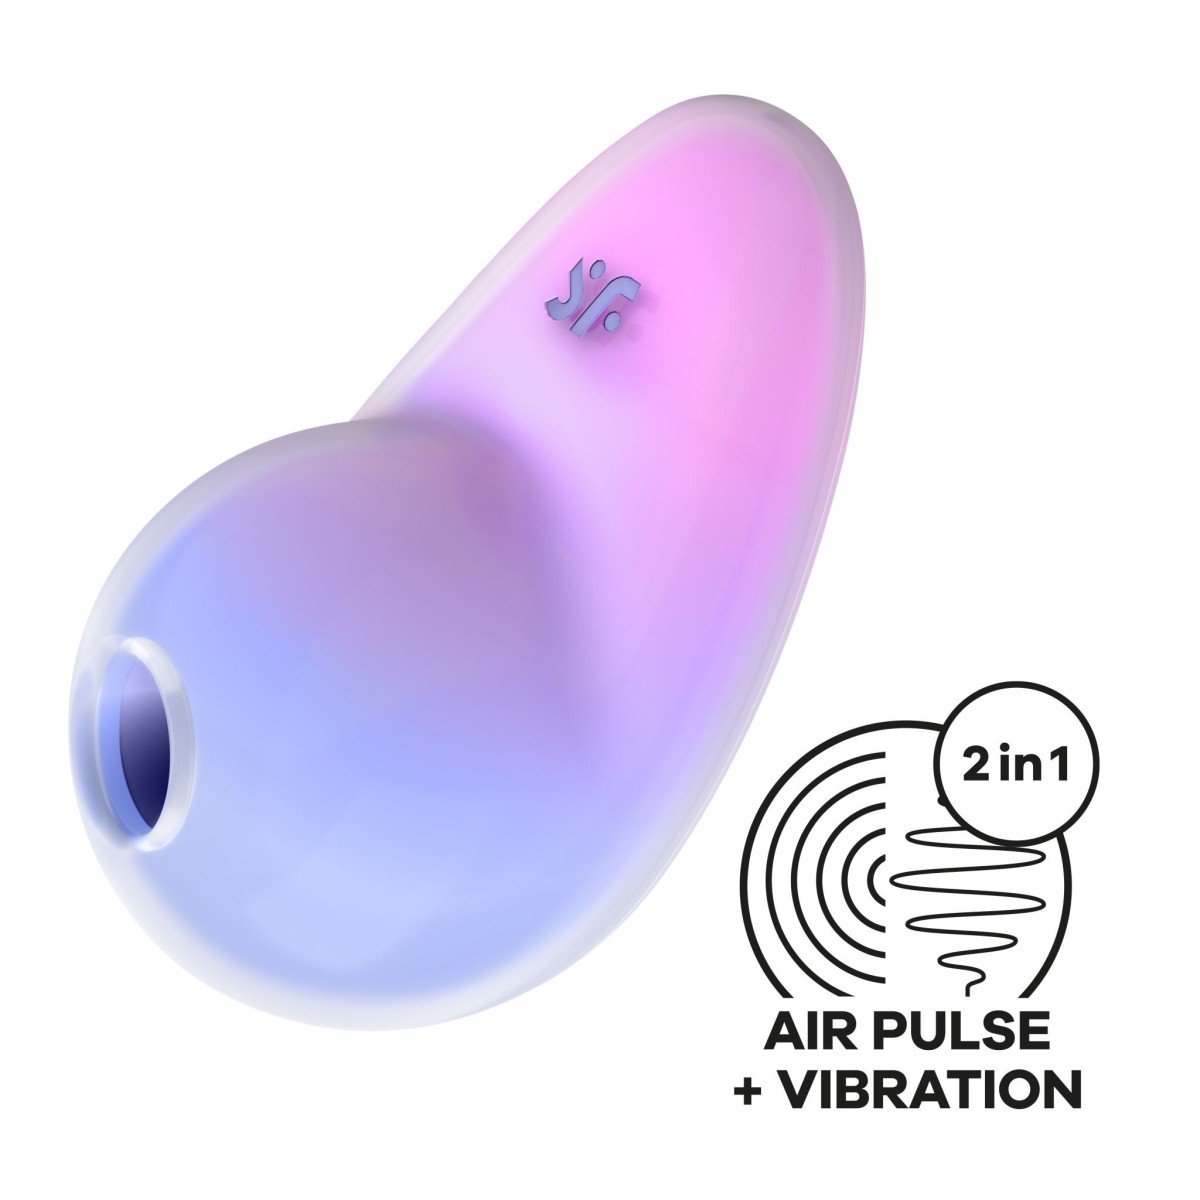 Stimulátor klitorisu Satisfyer Pixie Dust Violet/Pink, přikládací vibrátor s tlakovými vlnami